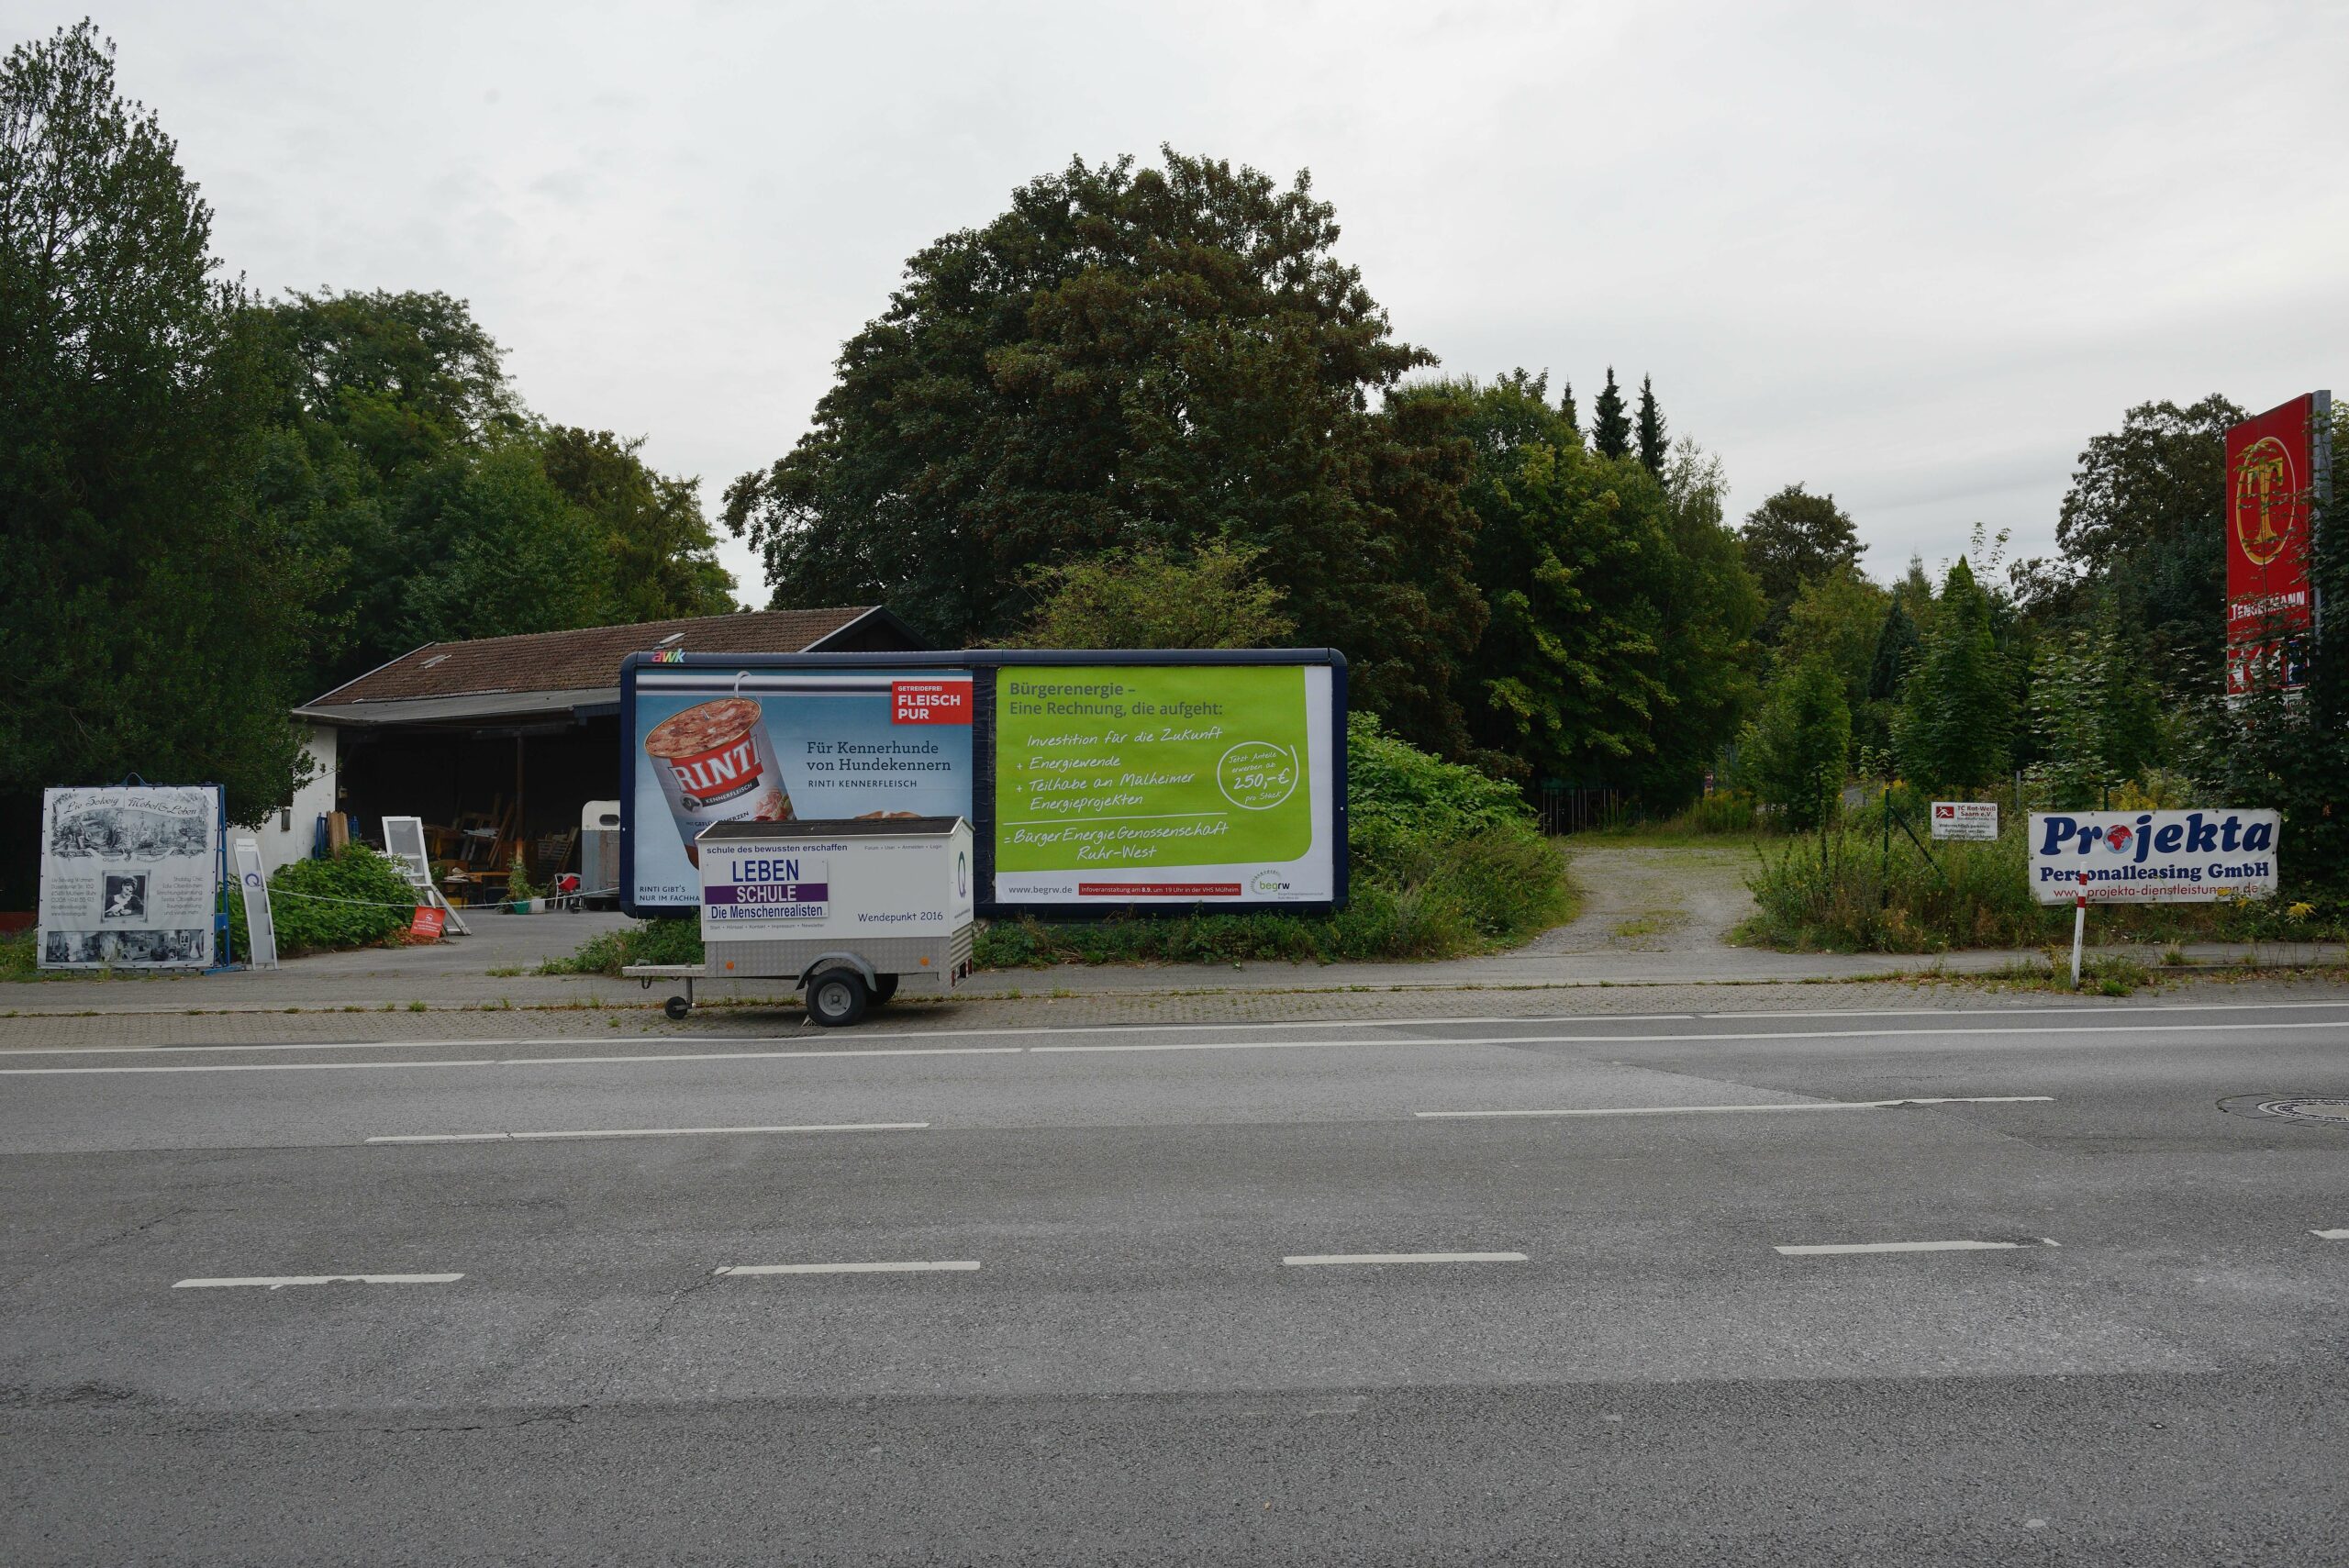 Plakataktion der BrgerEnergieGenossenschaft Ruhr-West September 2016